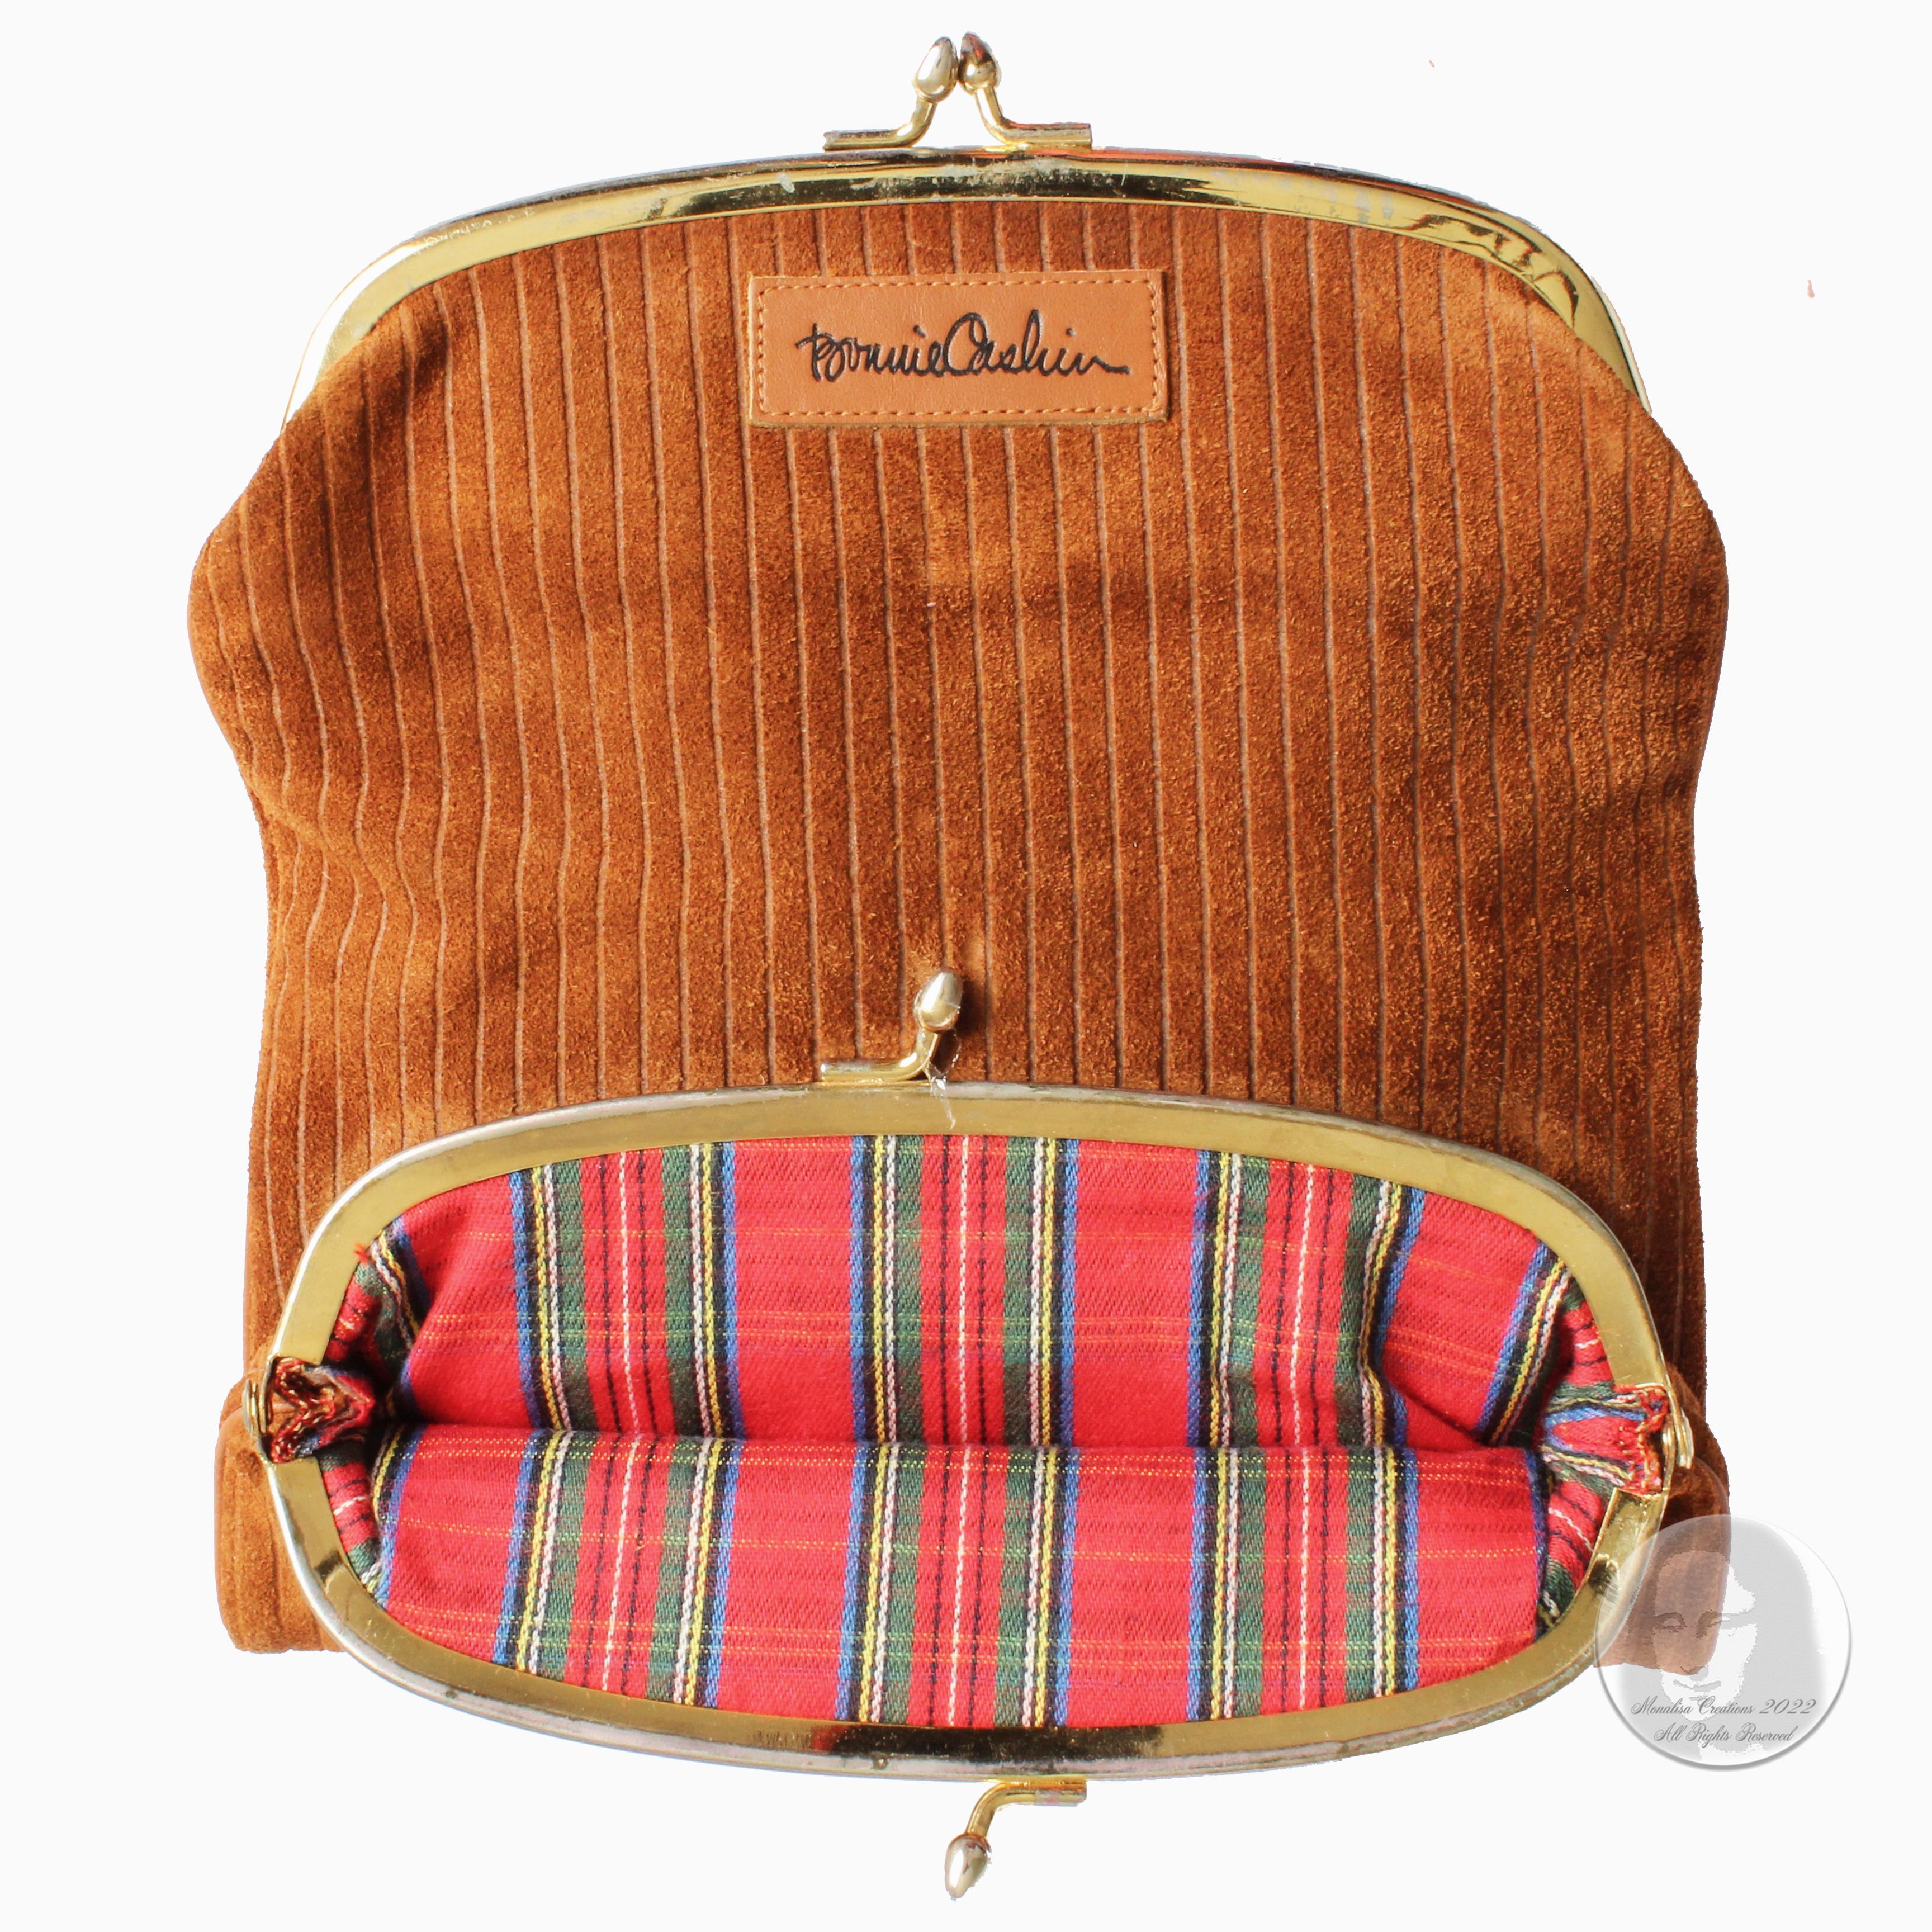 Women's or Men's Bonnie Cashin Clutch Bag Double Kisslock Pouch Wallet Tan Suede Leather Rare 60s